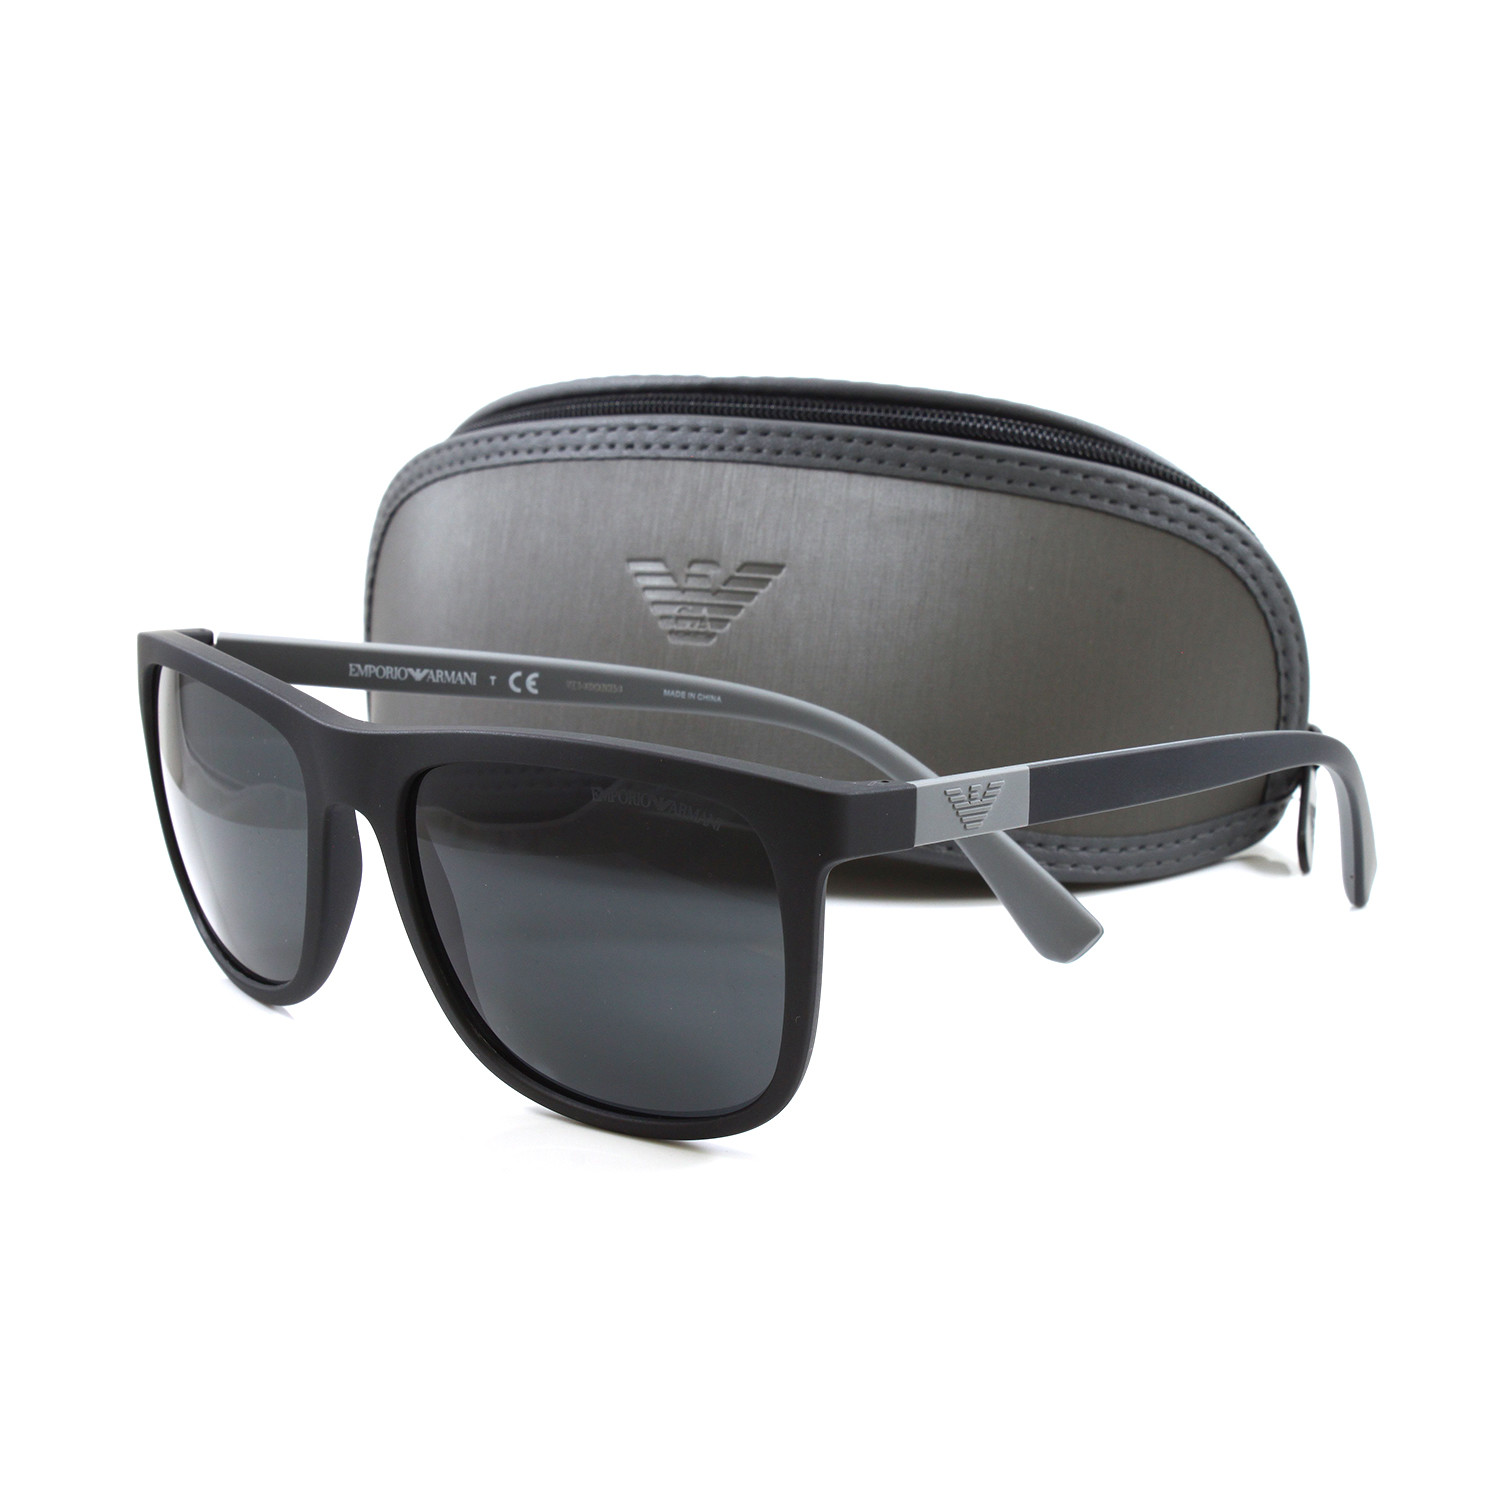 Emporio Armani // Men's EA4079 Sunglasses // Matte Black - Emporio ...